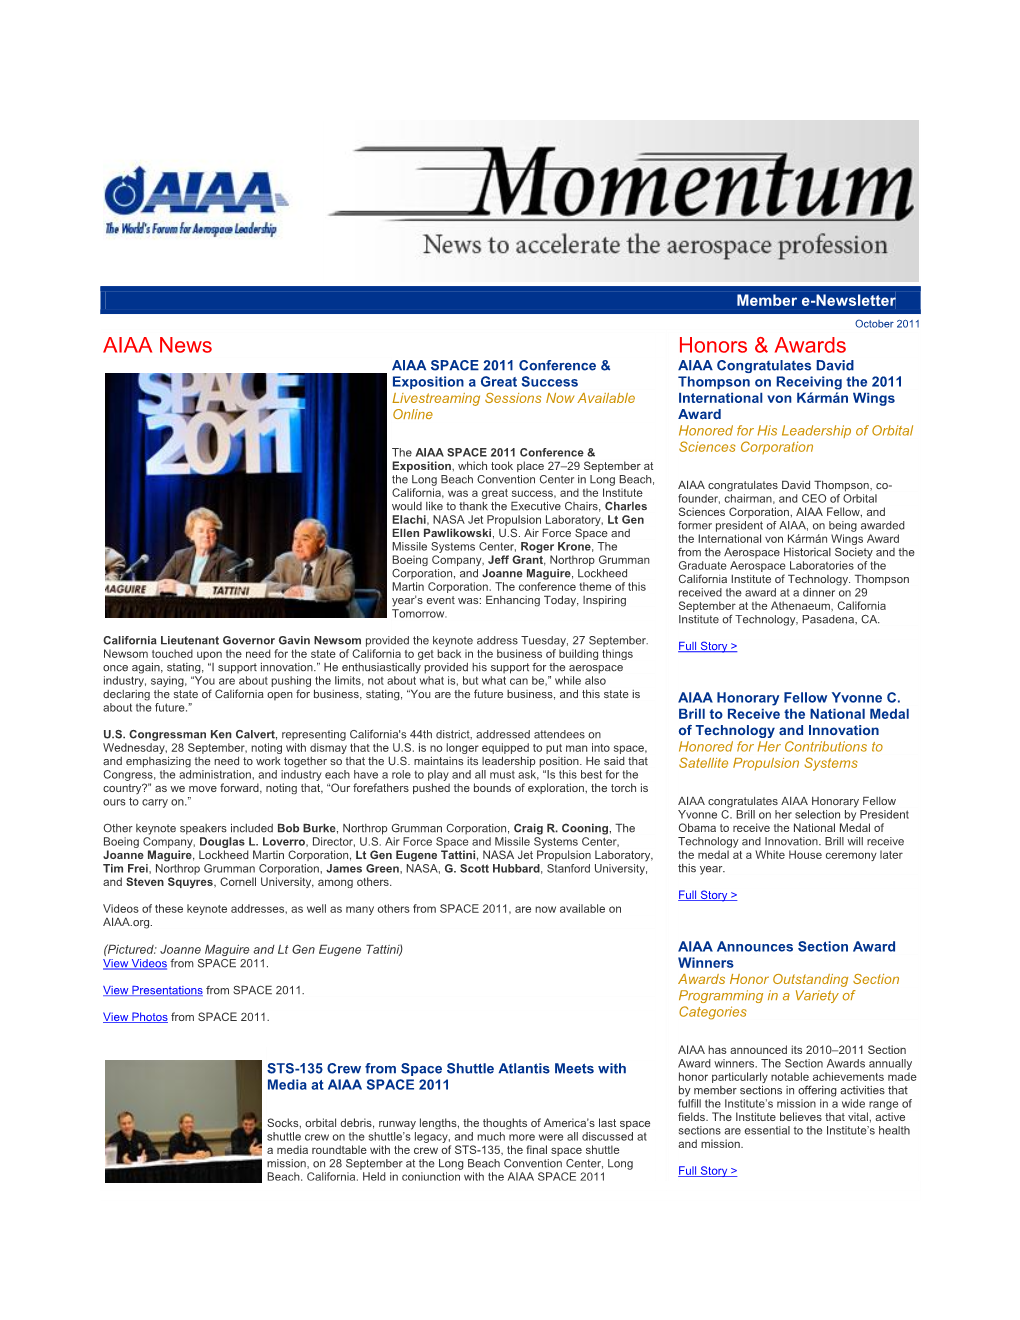 AIAA News Honors & Awards